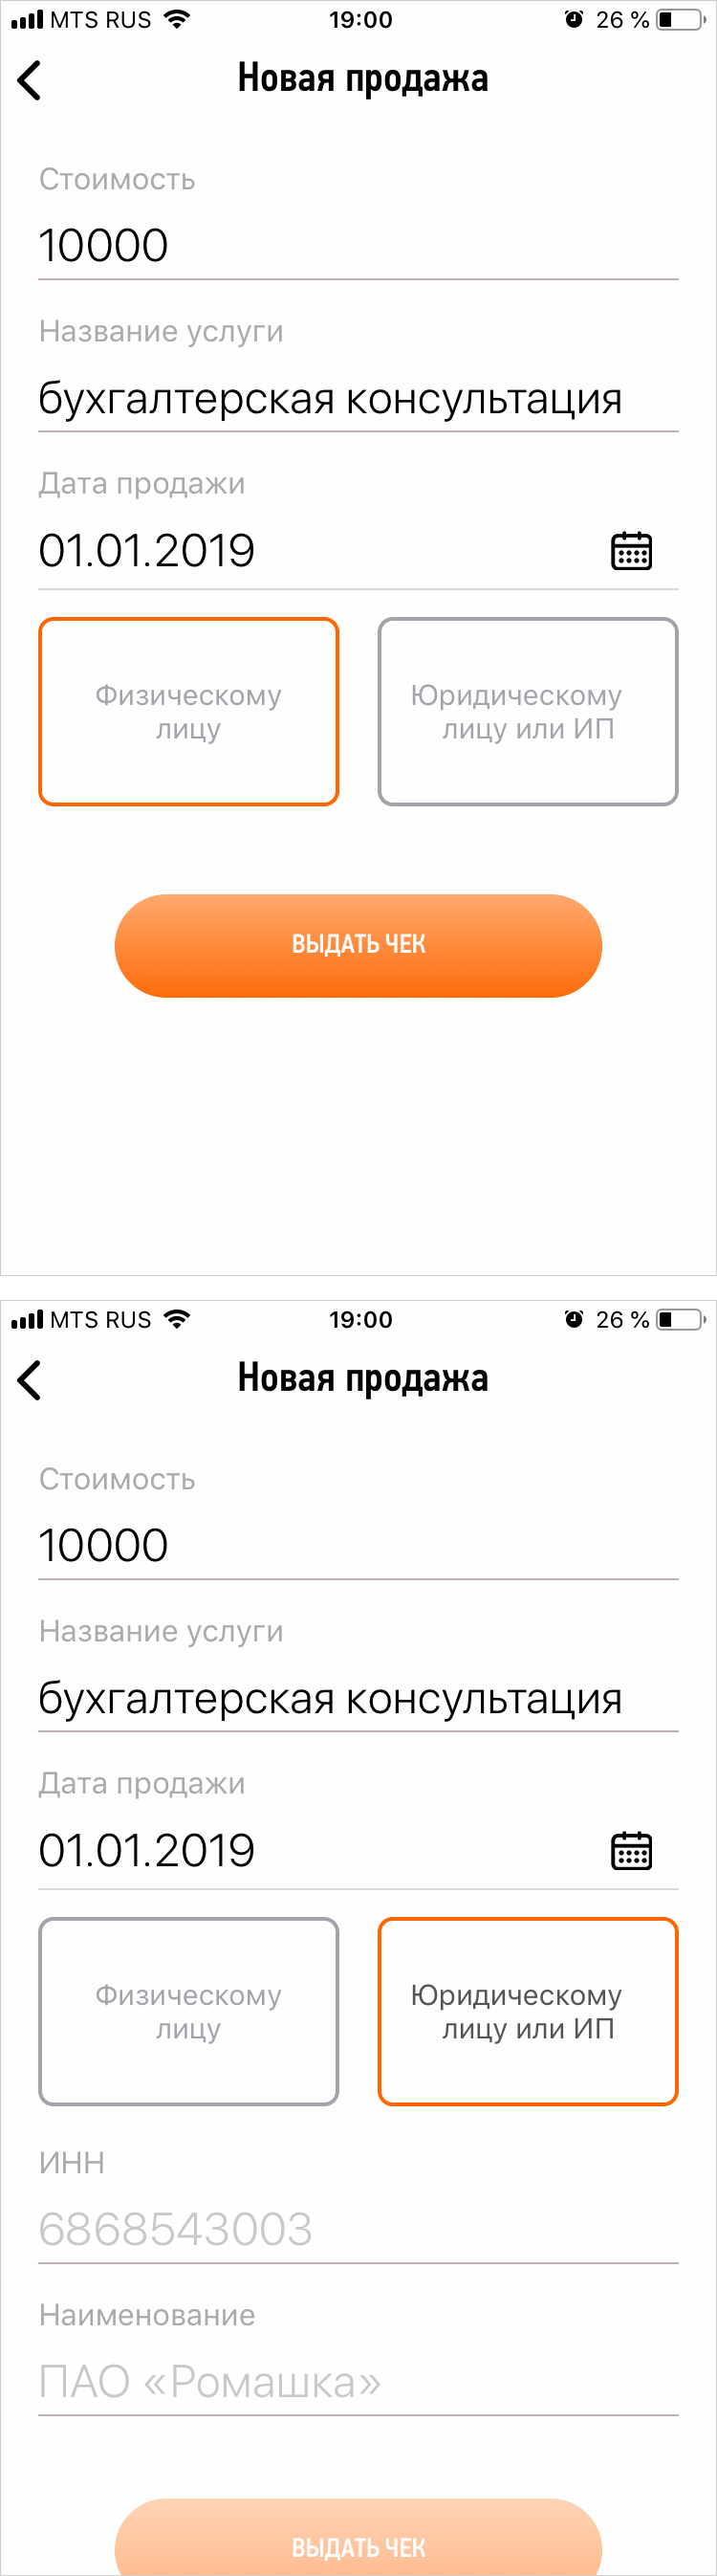 Яндекс деньги что это такое и как пользоваться ип